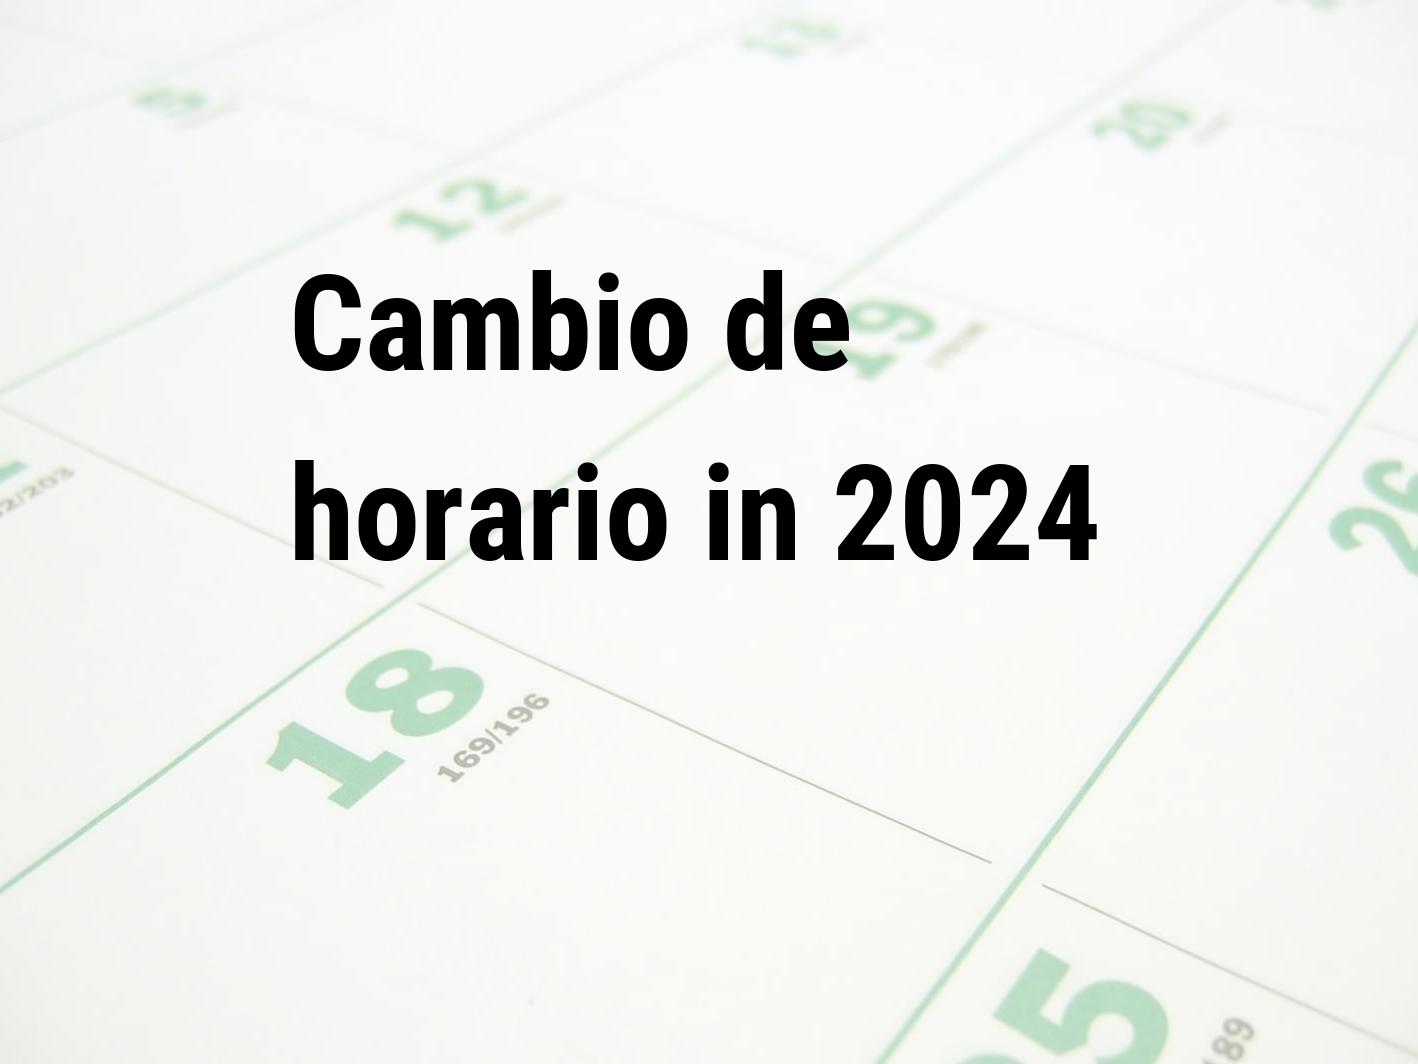 Cambio de horario 2024 | Calendar Center